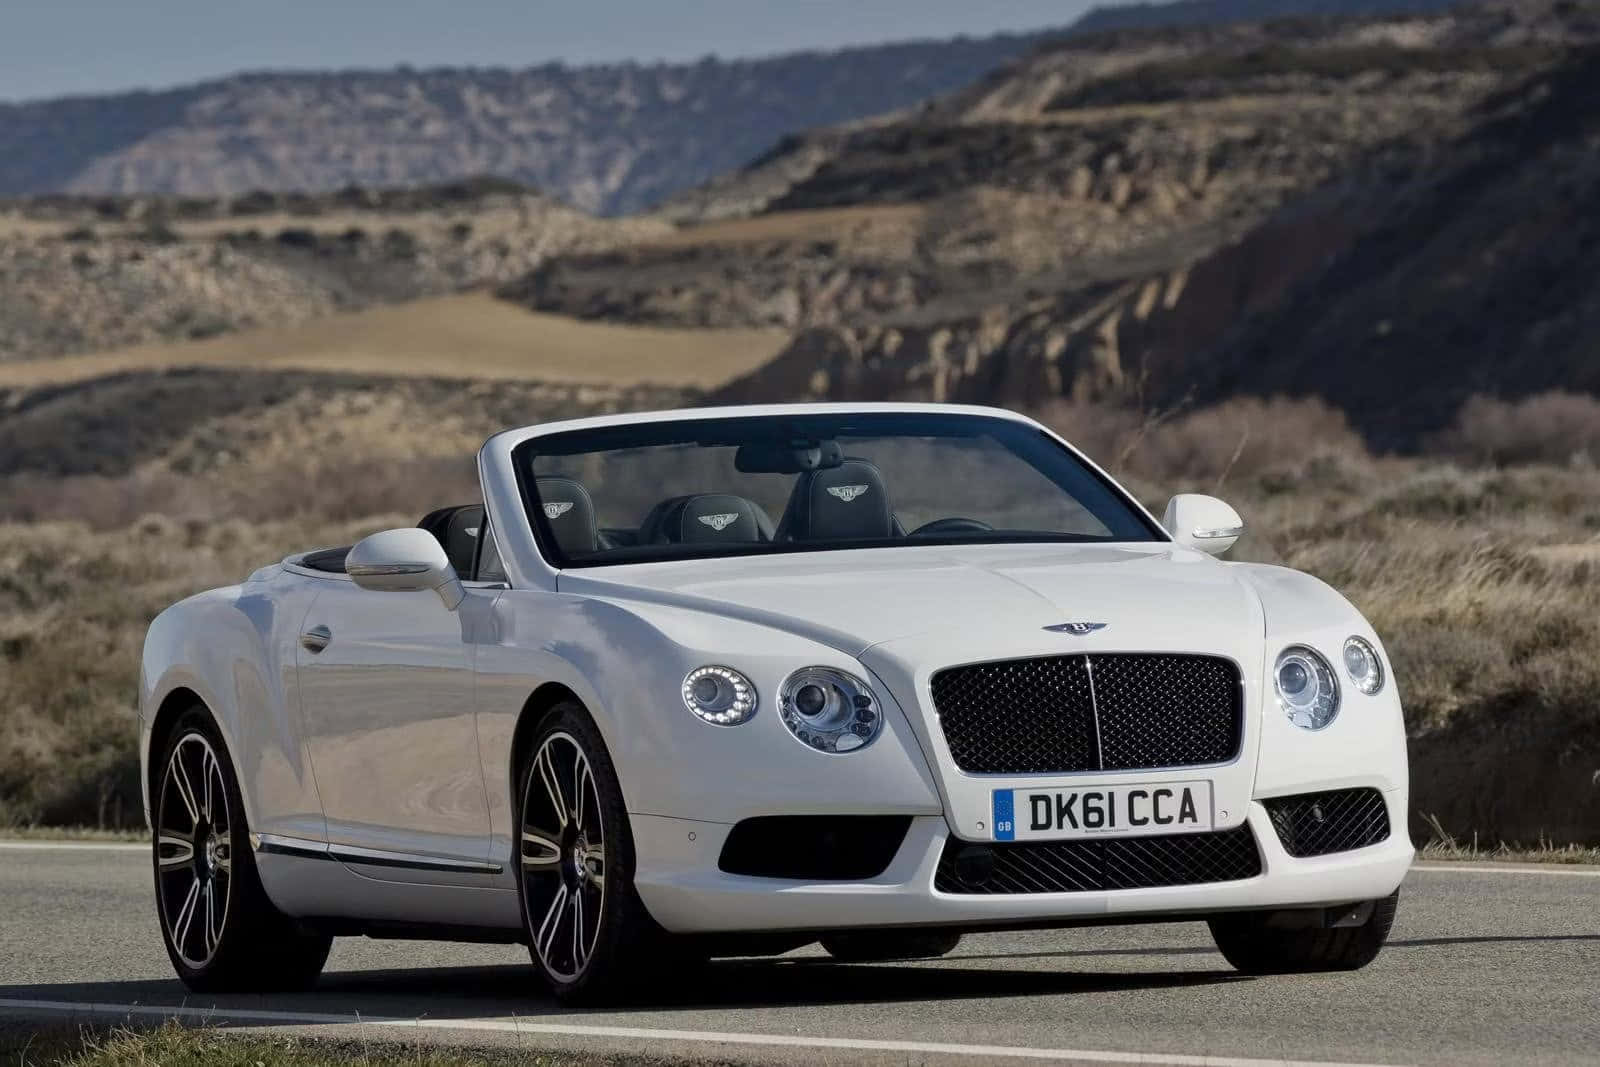 Genießensie Den Luxus Eines Bentley.